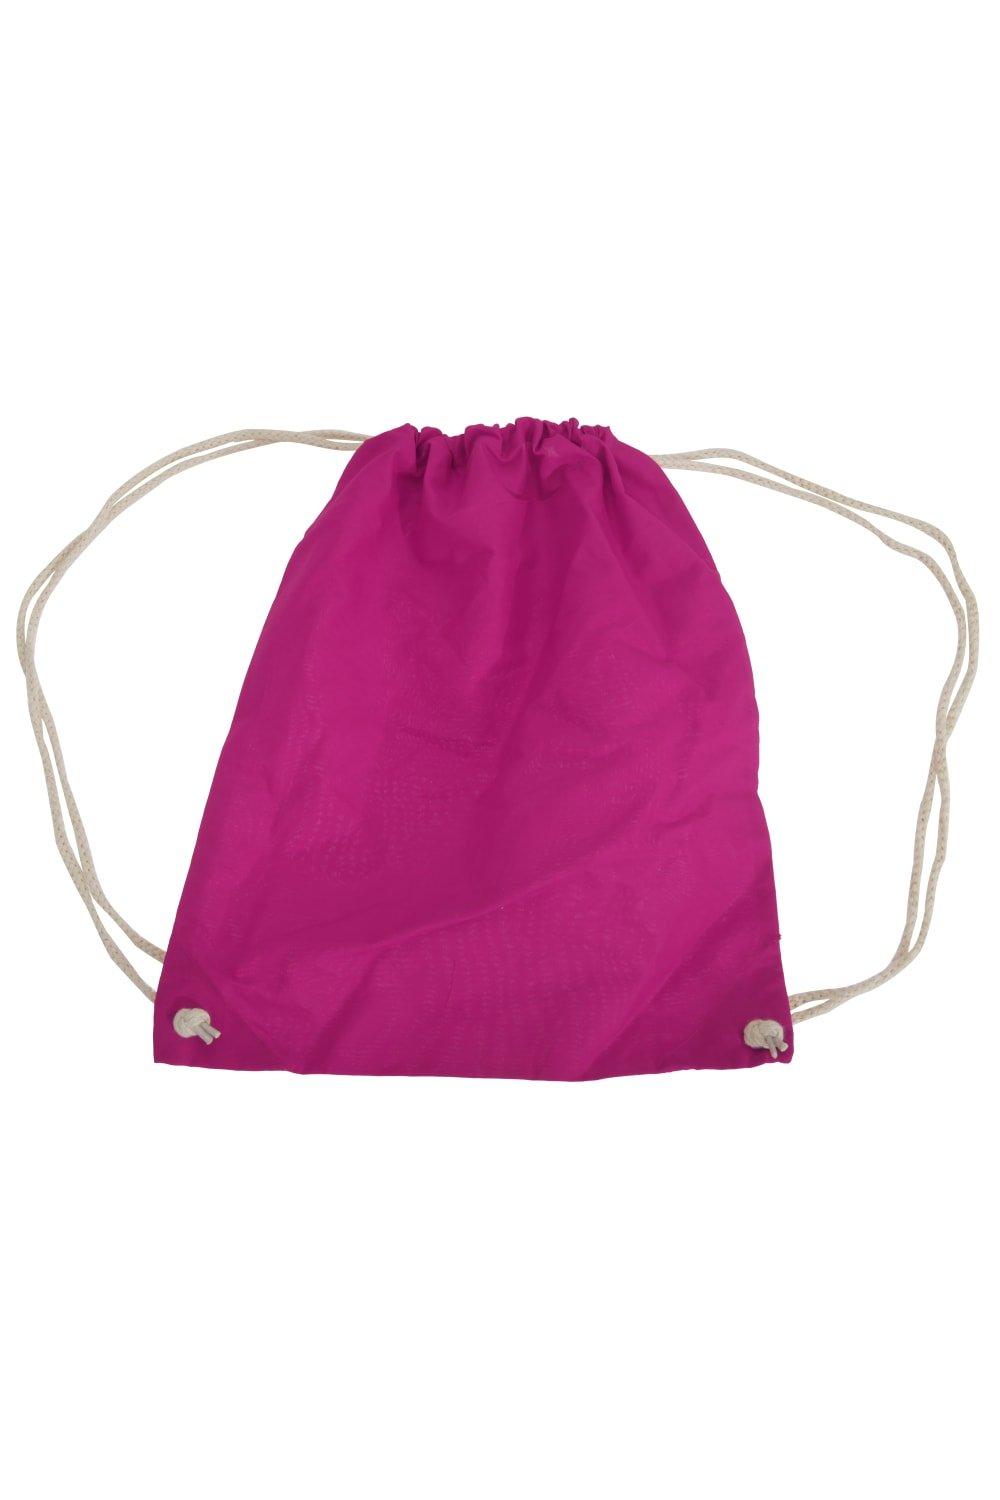 цена Хлопковая сумка Gymsac - 12 литров Westford Mill, розовый